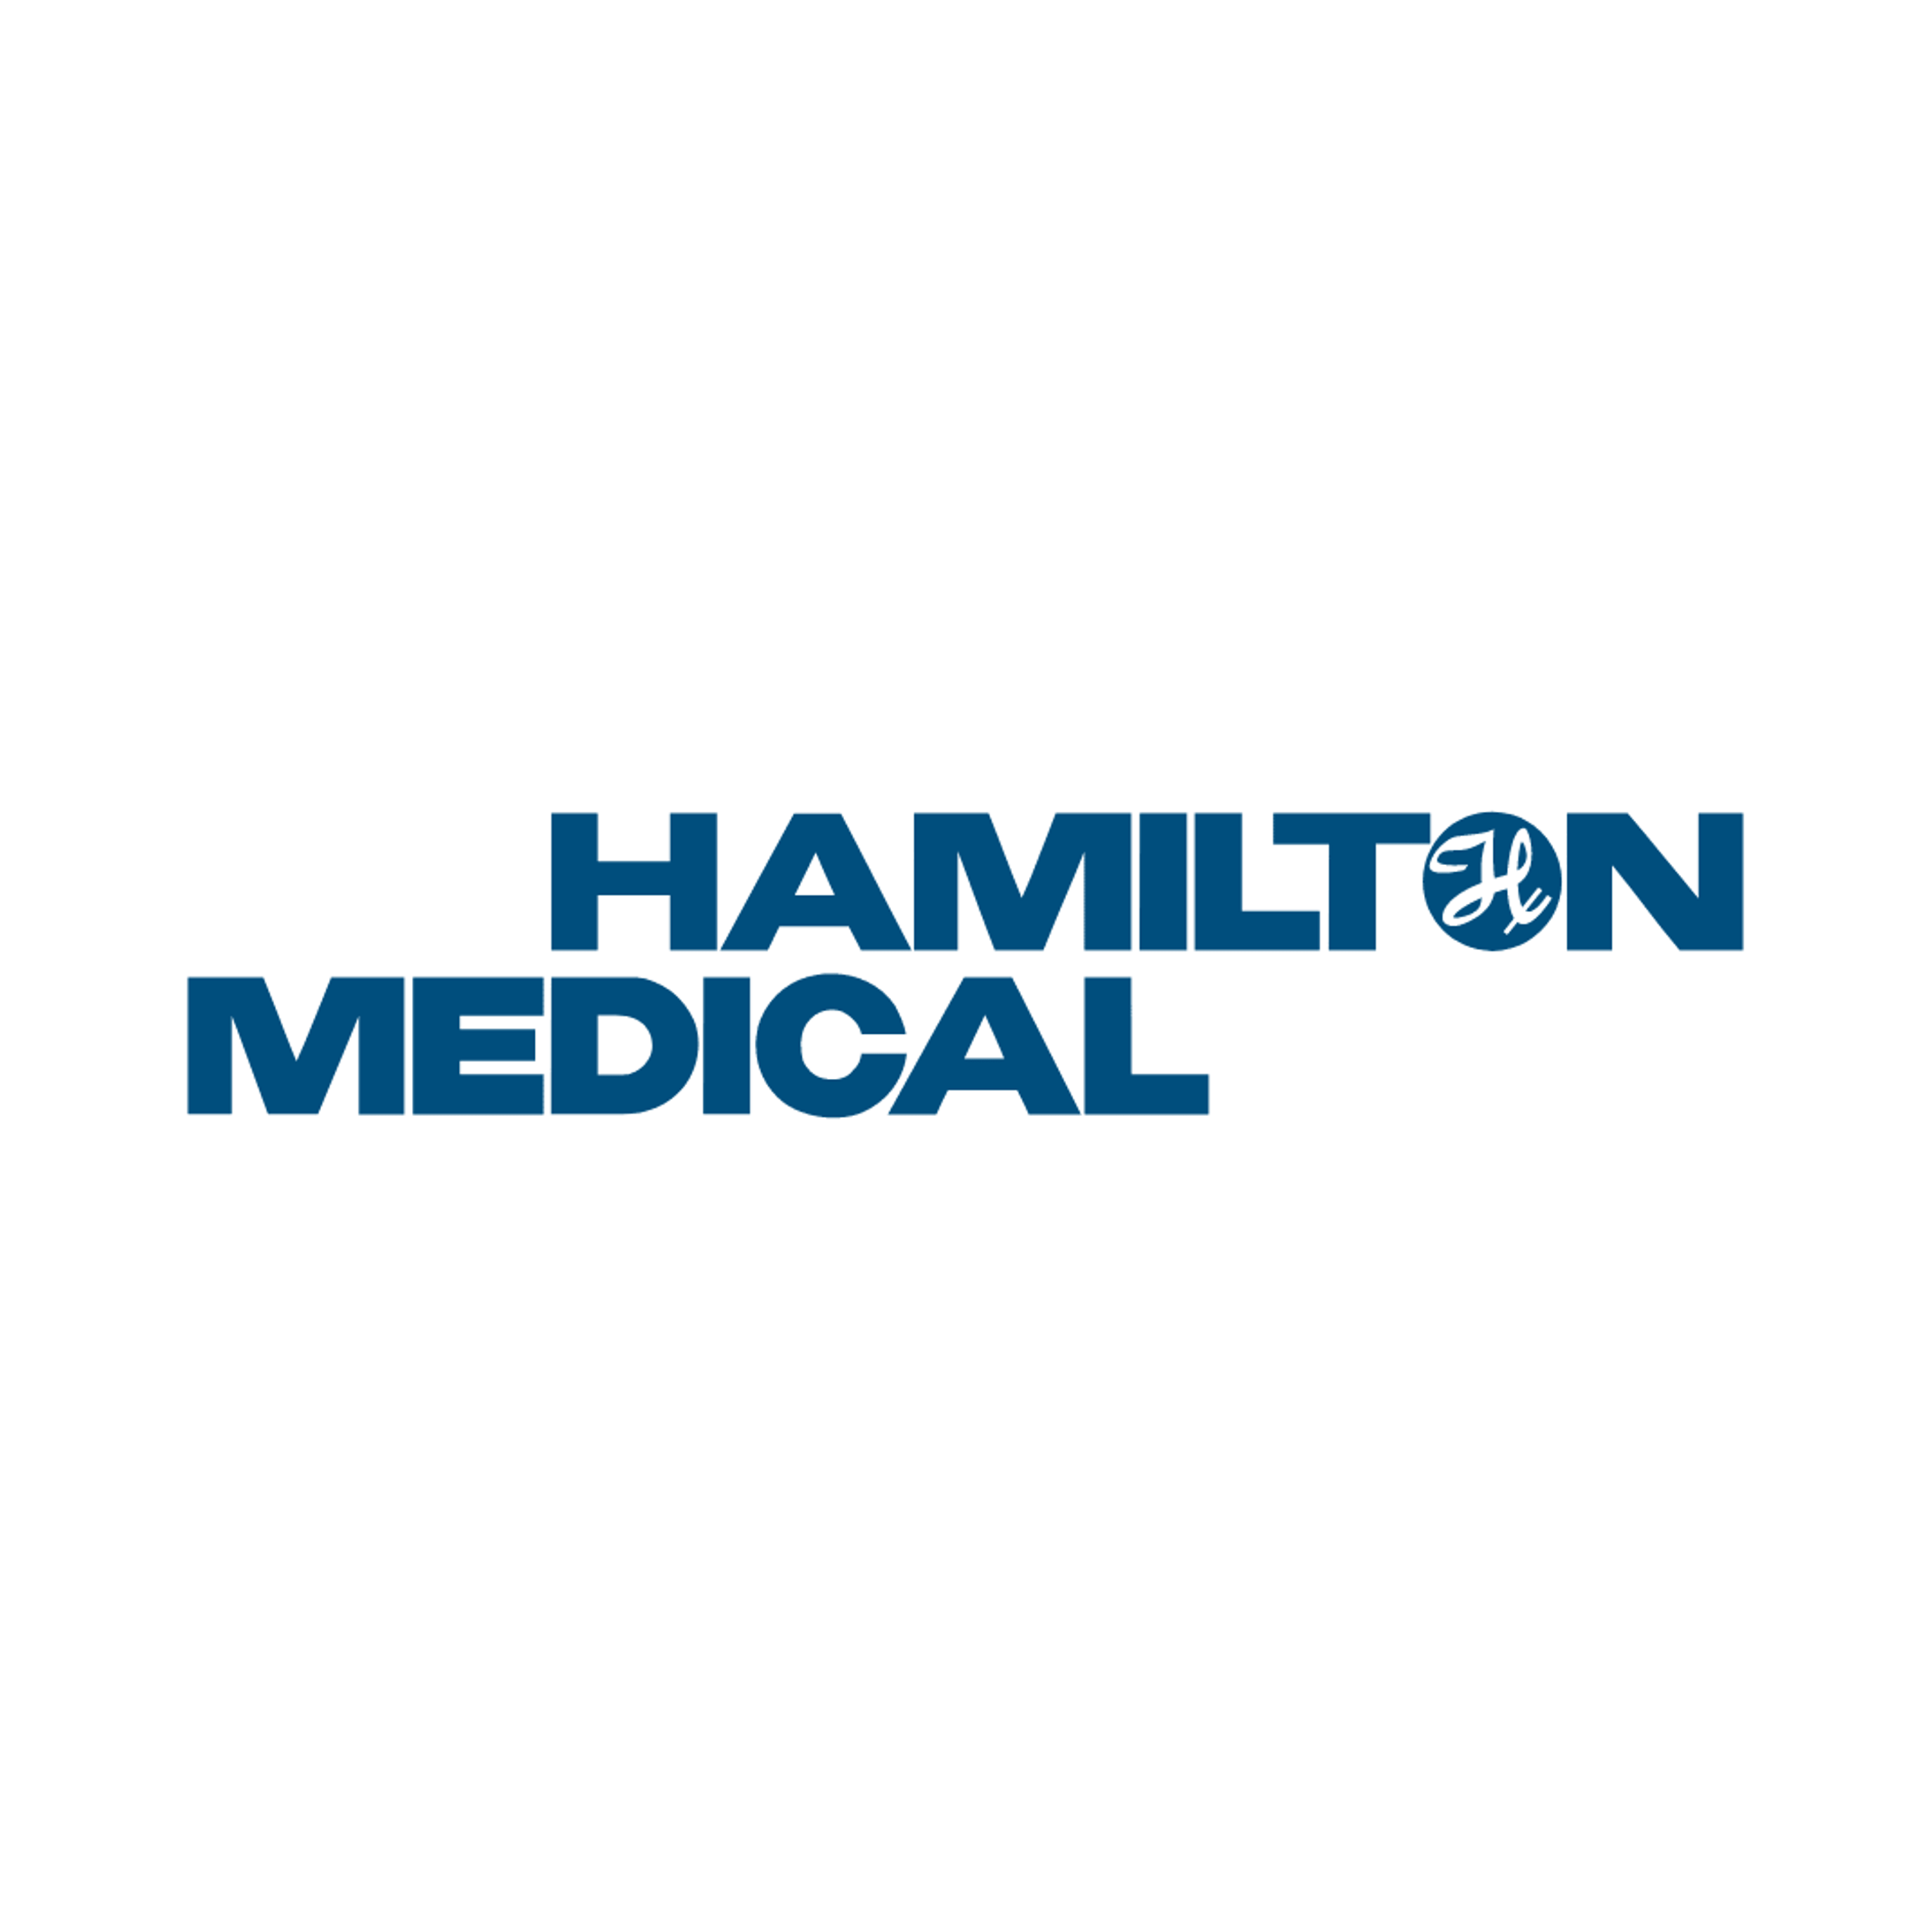 Equiptrack includes Hamilton Medical equipment